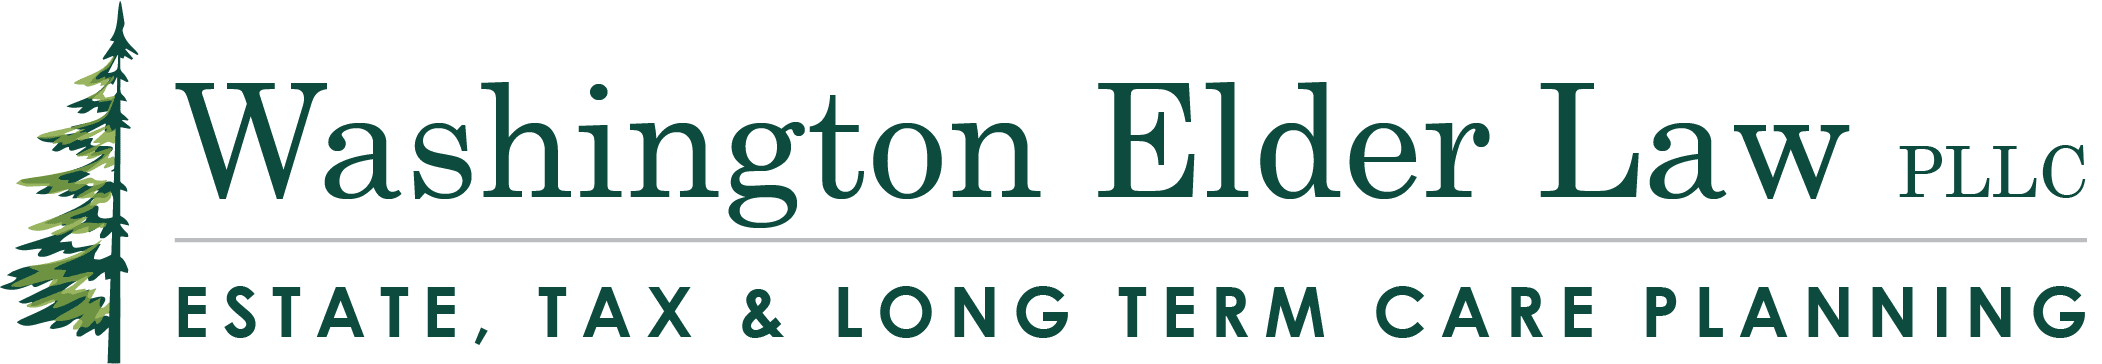 Washington Elder Law Logo Tree